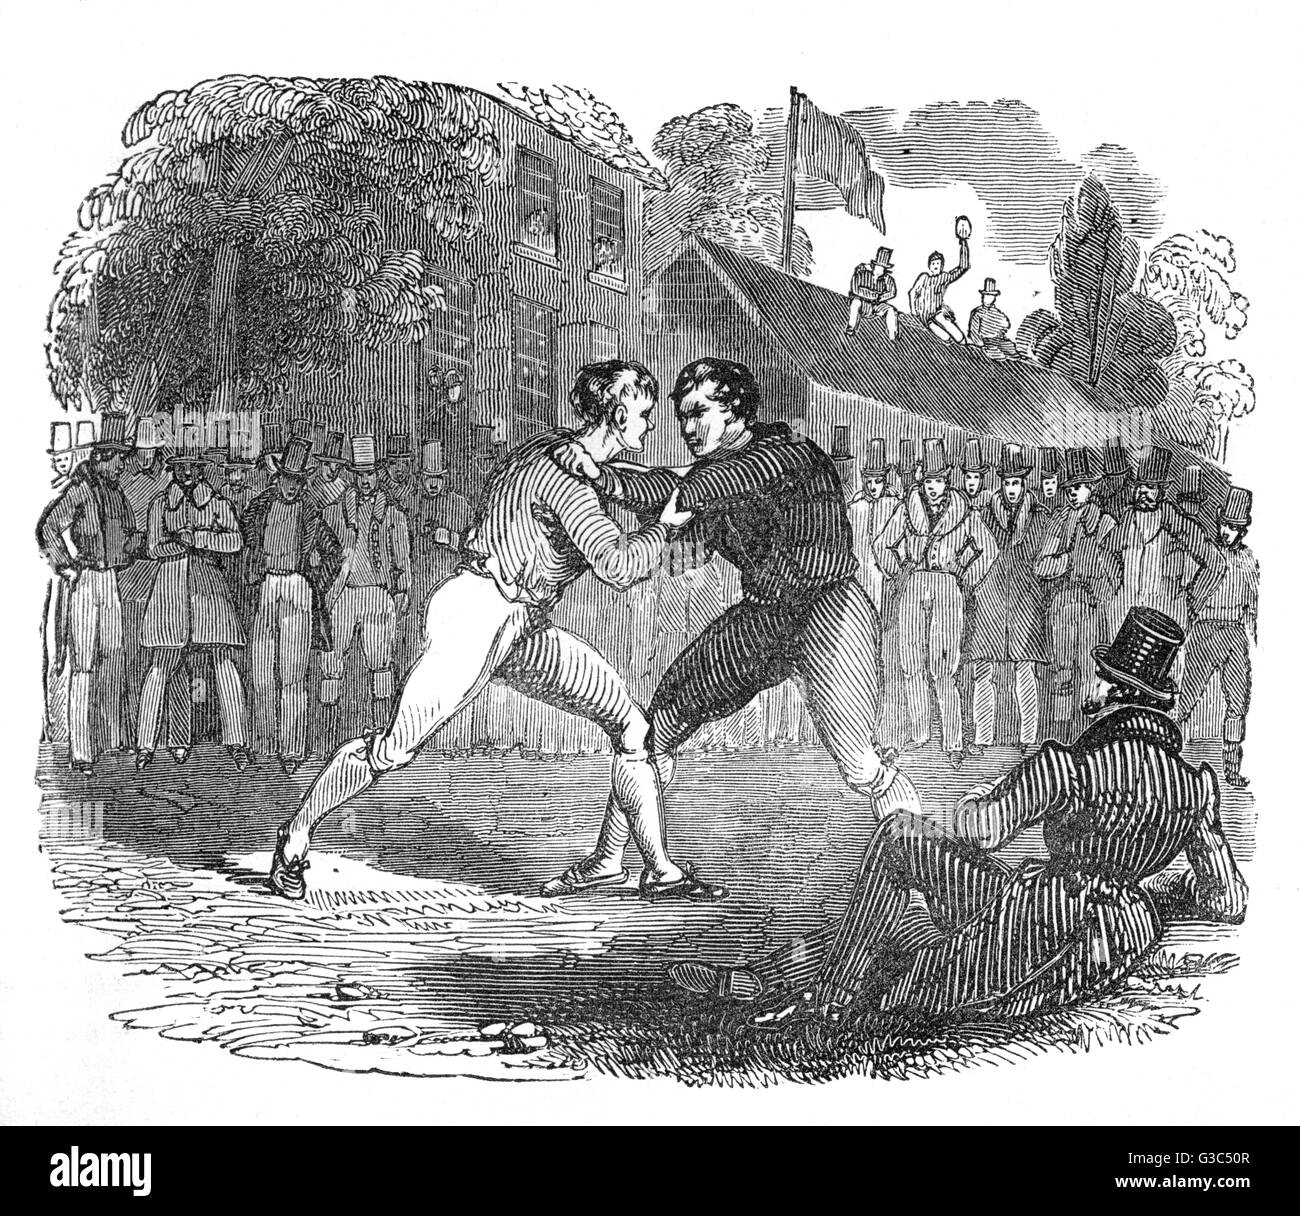 Illustration, two men wrestling Stock Photo